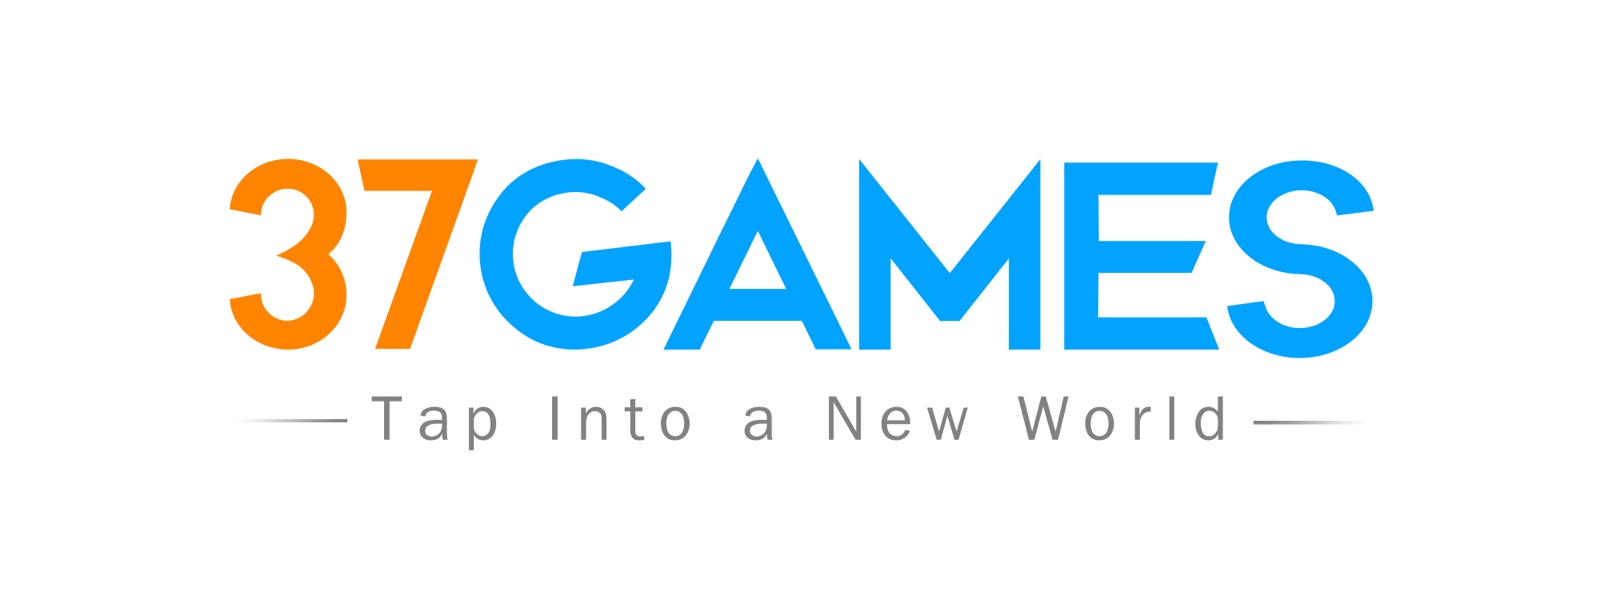 37GAMES全新品牌LOGO发布，三七互娱开启出海新篇章